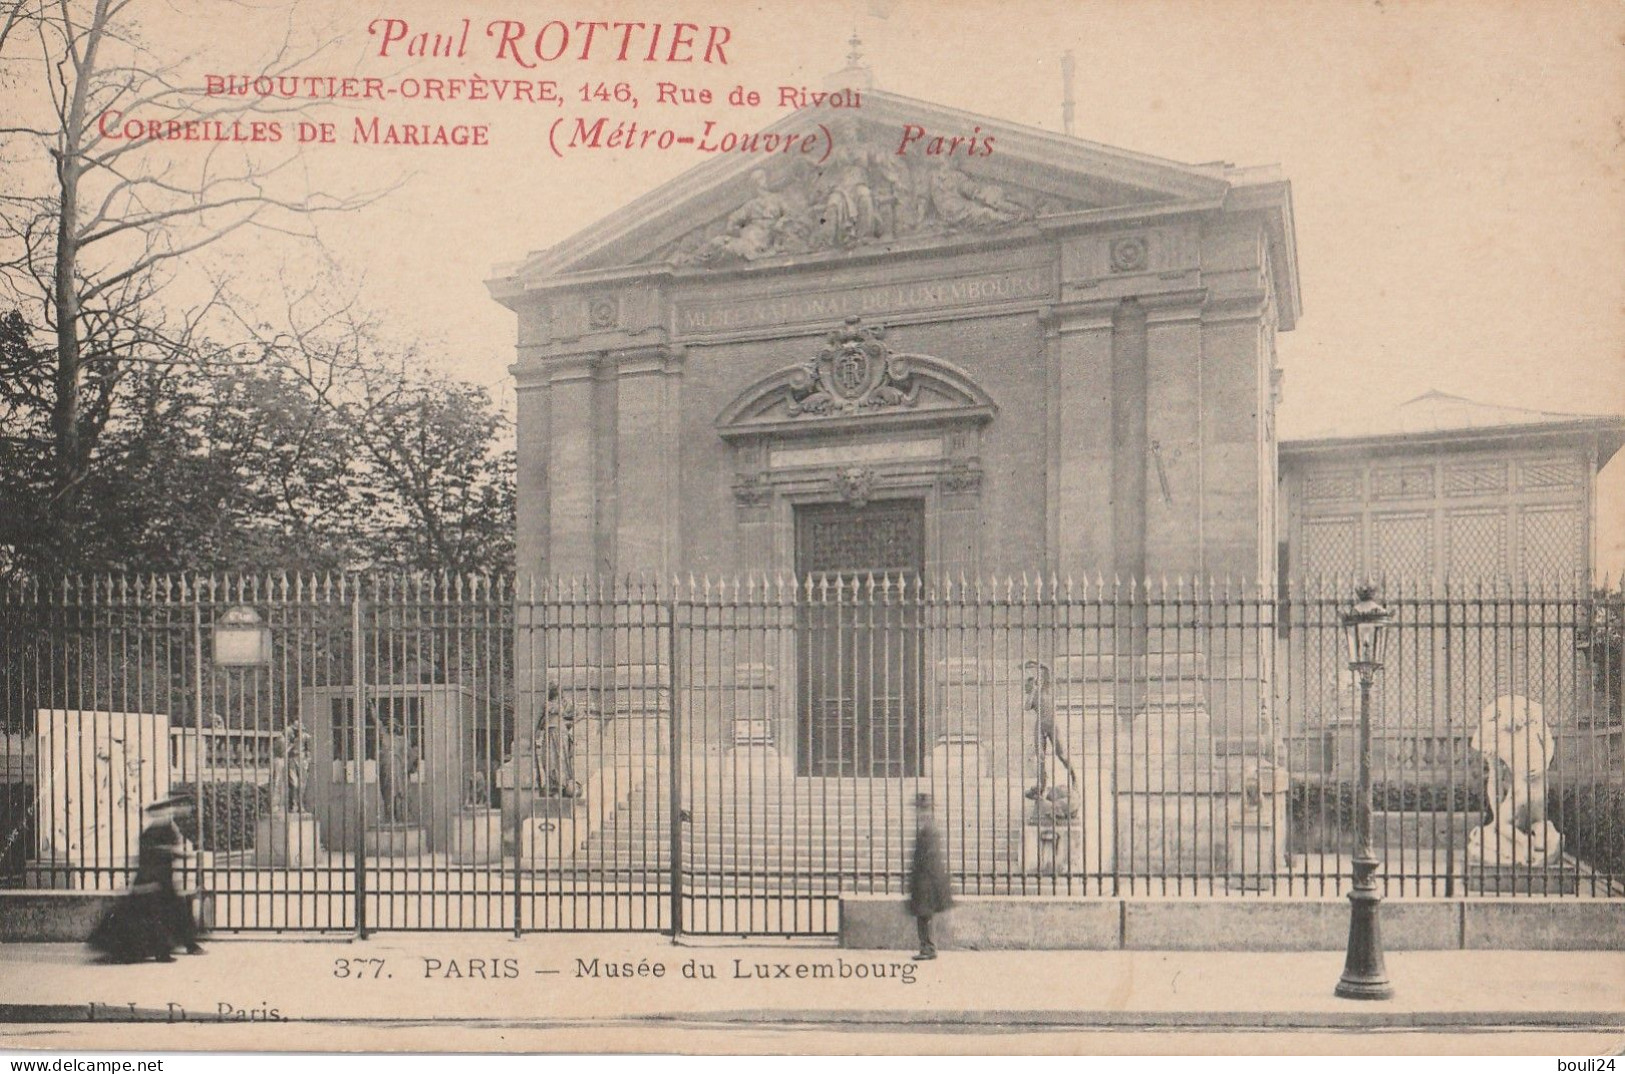 VIL2024  - PARIS MUSEE  DU LUXEMBOURG   PAUL ROTTIER  BIJOUTIER ORFEVRE  RUE DE RIVOLI - Tour Eiffel